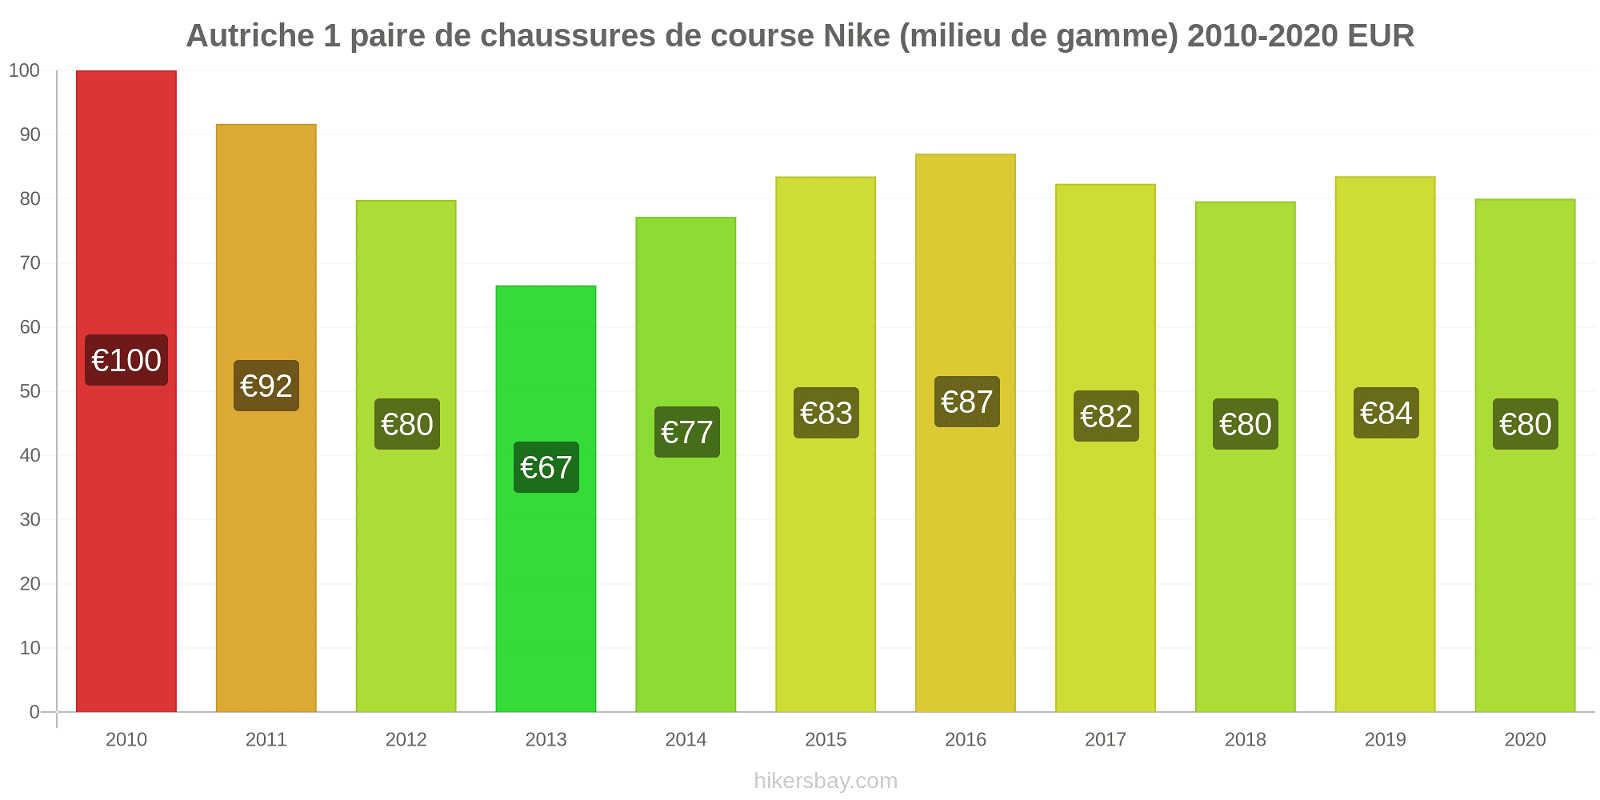 Autriche changements de prix 1 paire de chaussures de course Nike (milieu de gamme) hikersbay.com